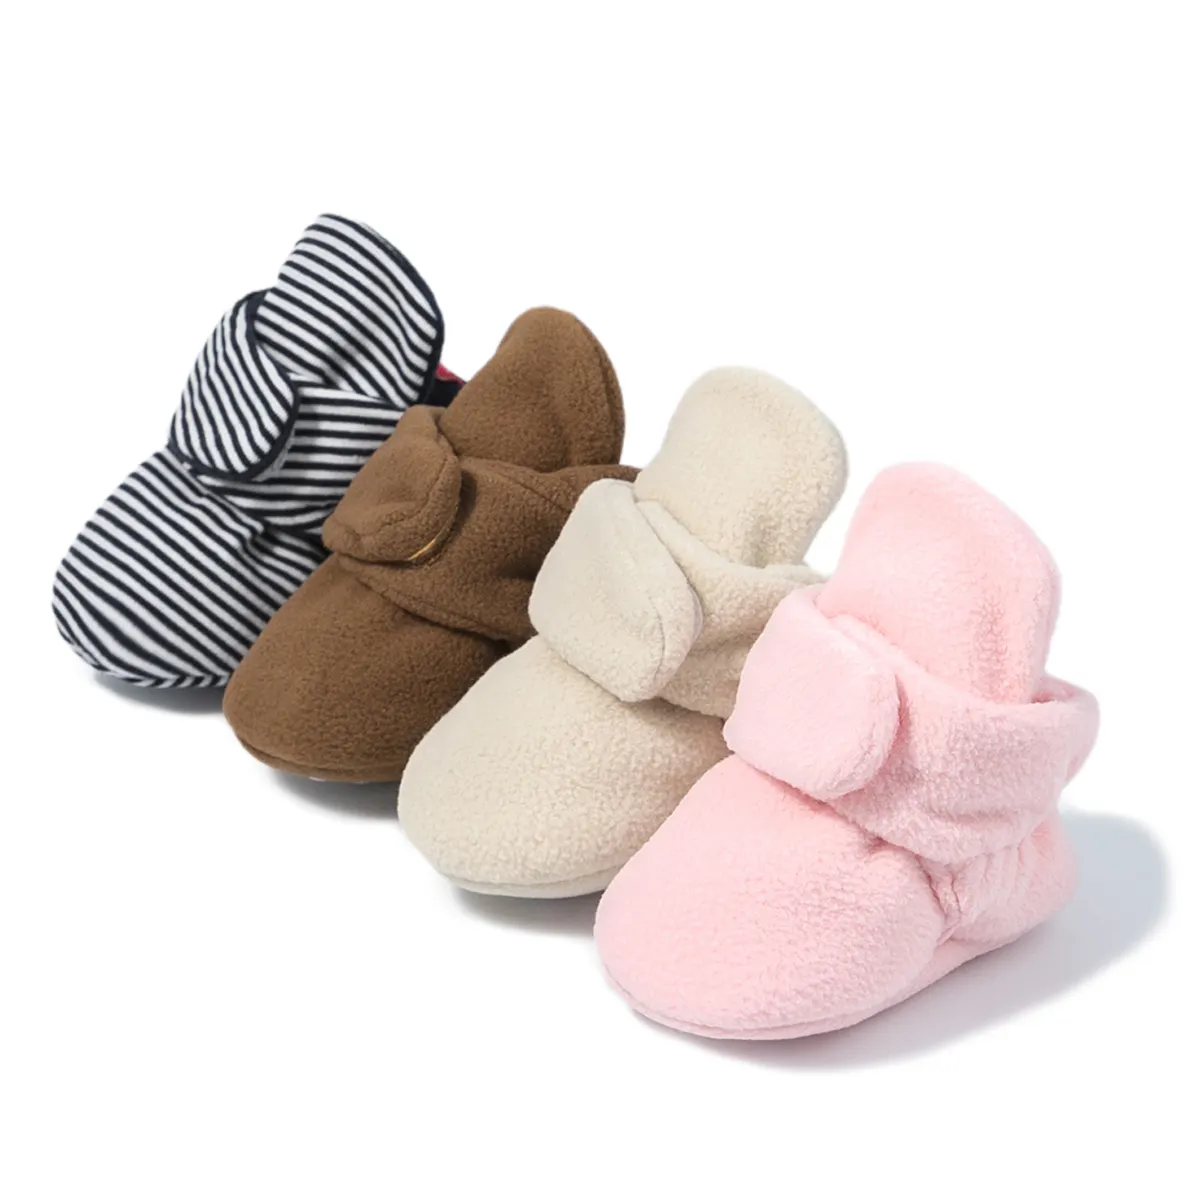 Neues Design Indoor Krippe Schuhe warme Winter Kleinkind weiche Baumwolle Boden rutsch feste 100% Baumwolle Babys chuhe und Socken